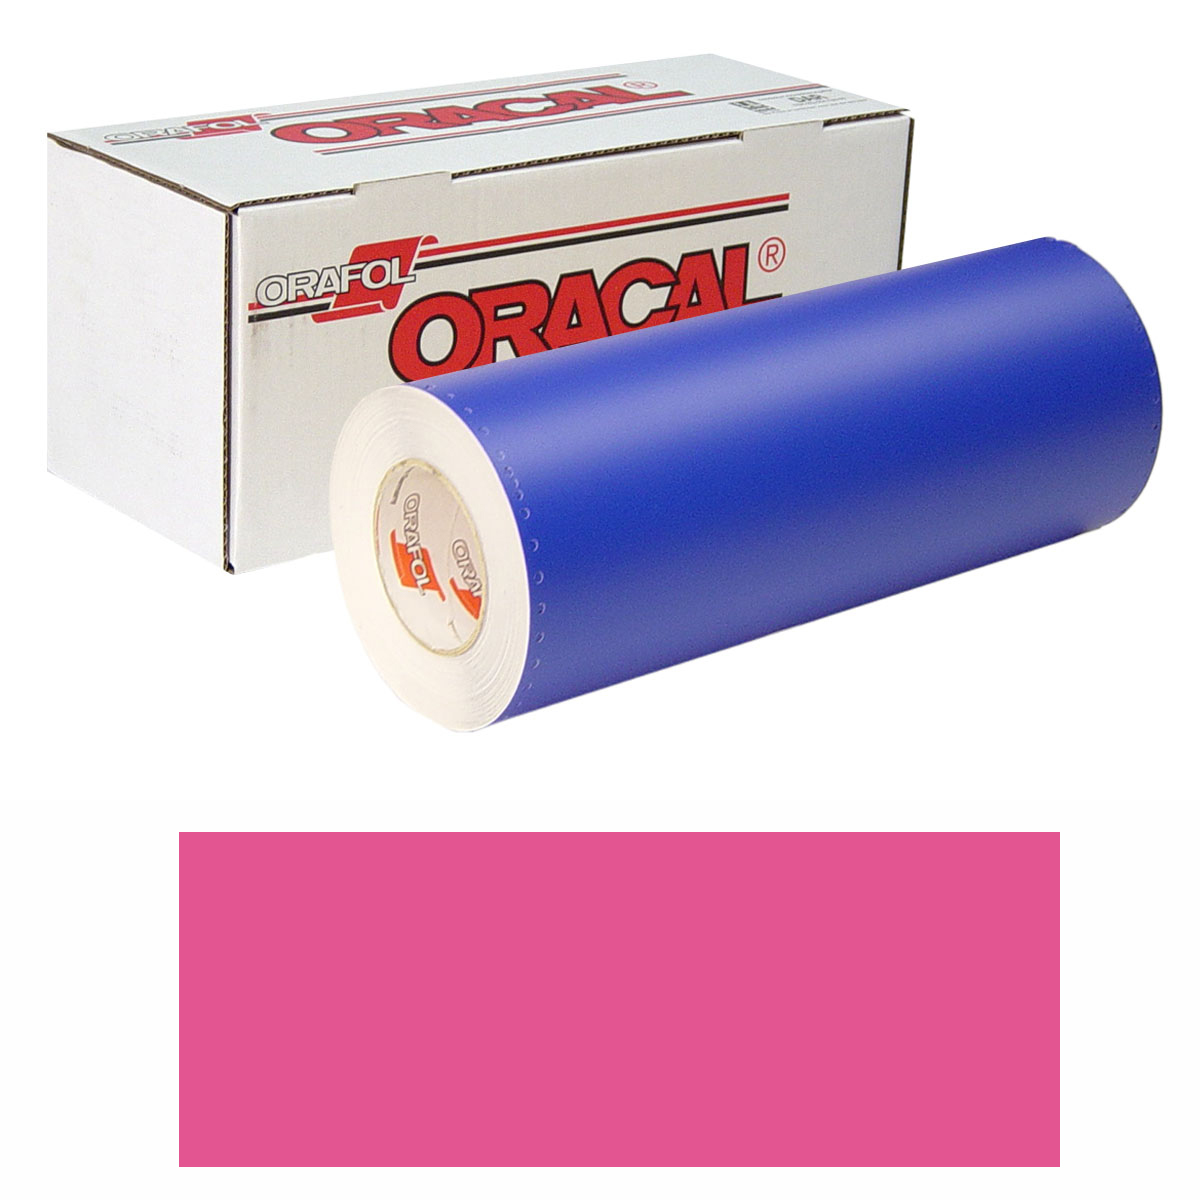 ORACAL 8300 Unp 48in X 50yd 041 Pink